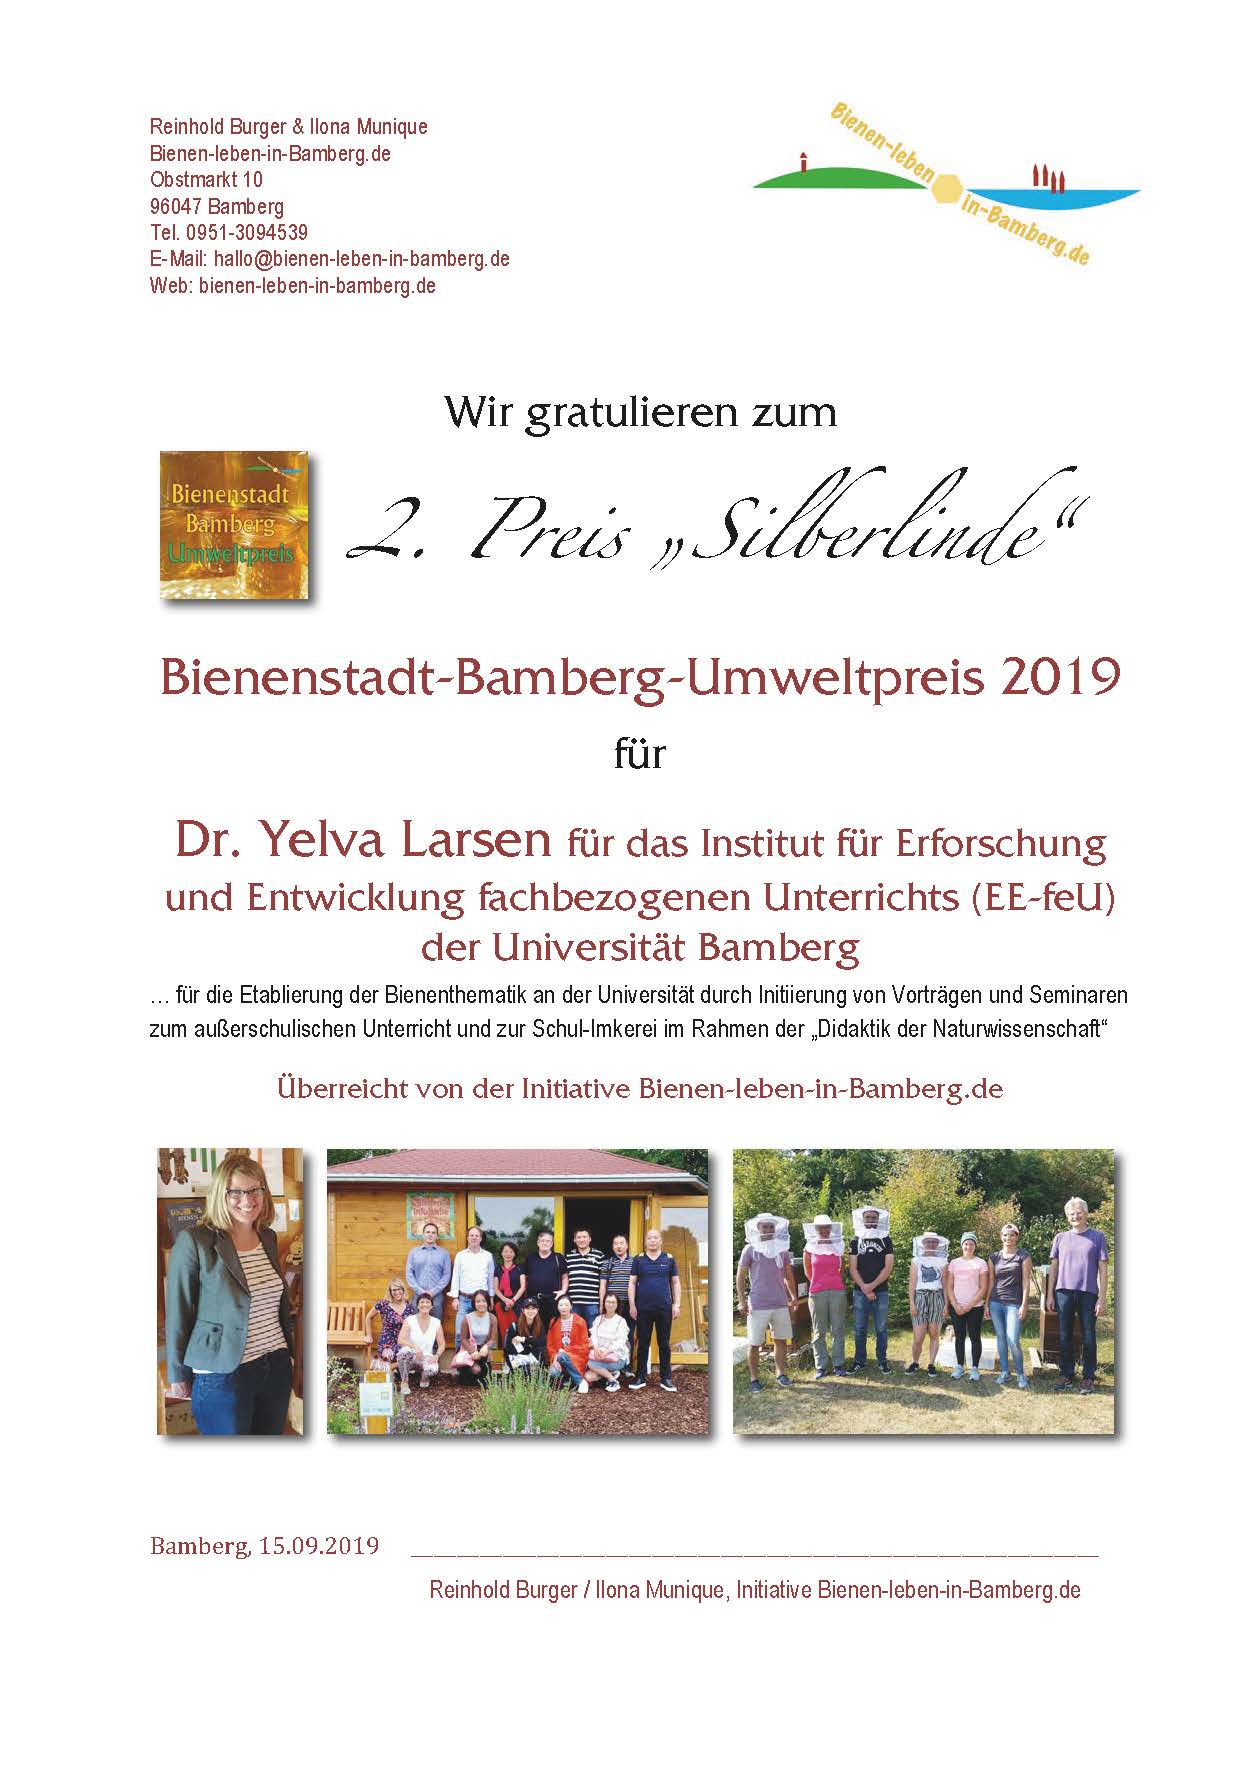 2. Preis BBU 2019 an Dr. Yelva Larsen